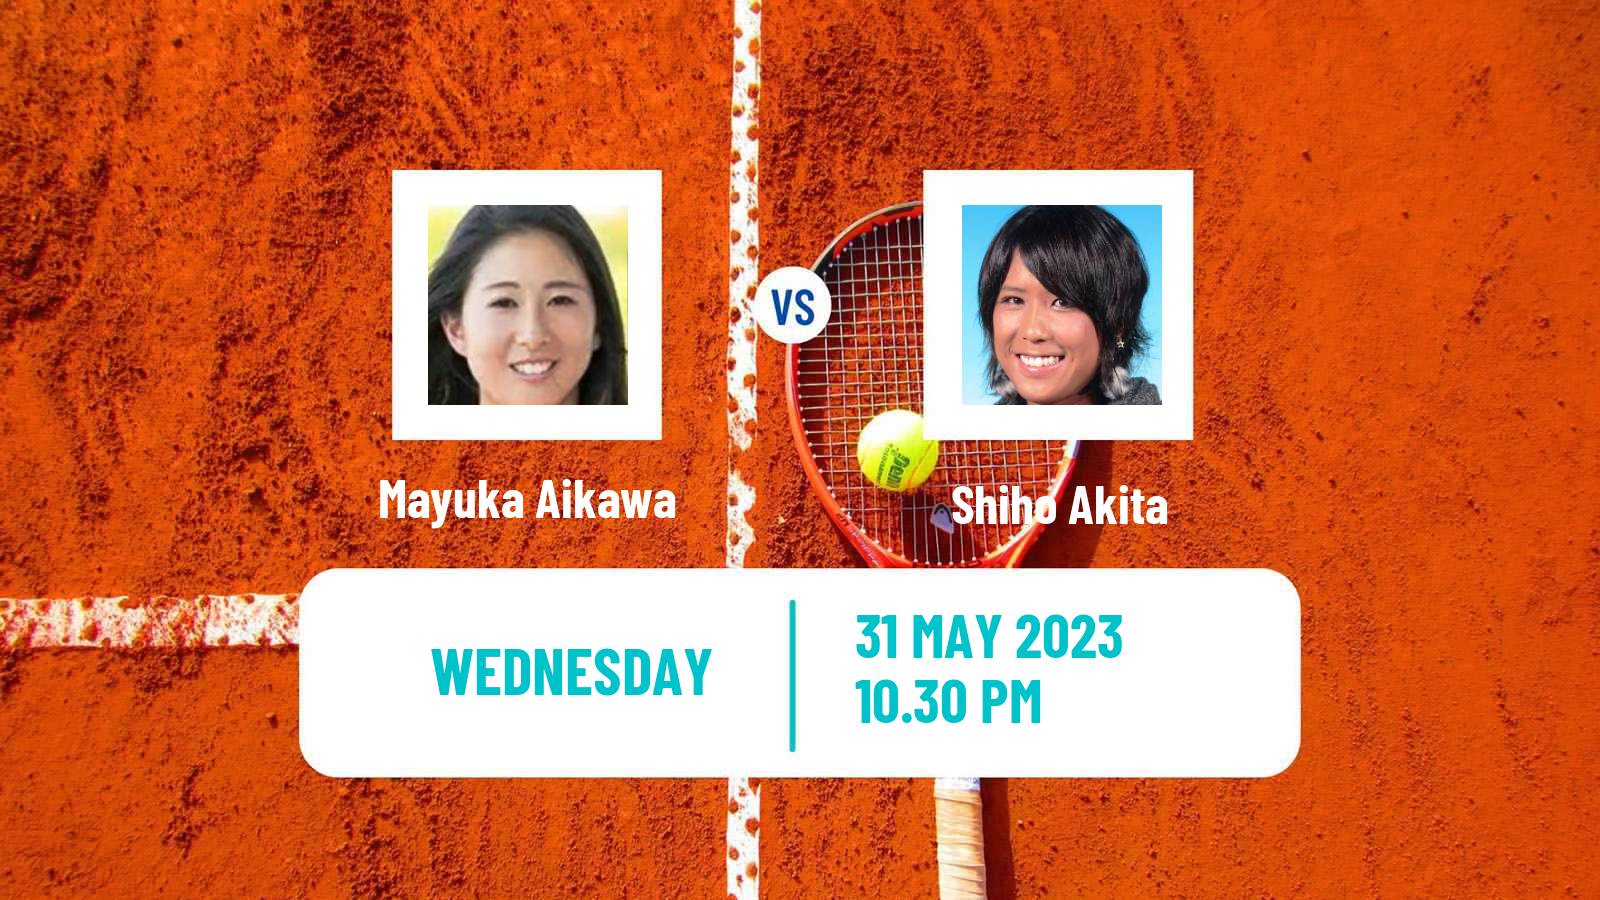 Tennis ITF W25 Tokyo Women Mayuka Aikawa - Shiho Akita